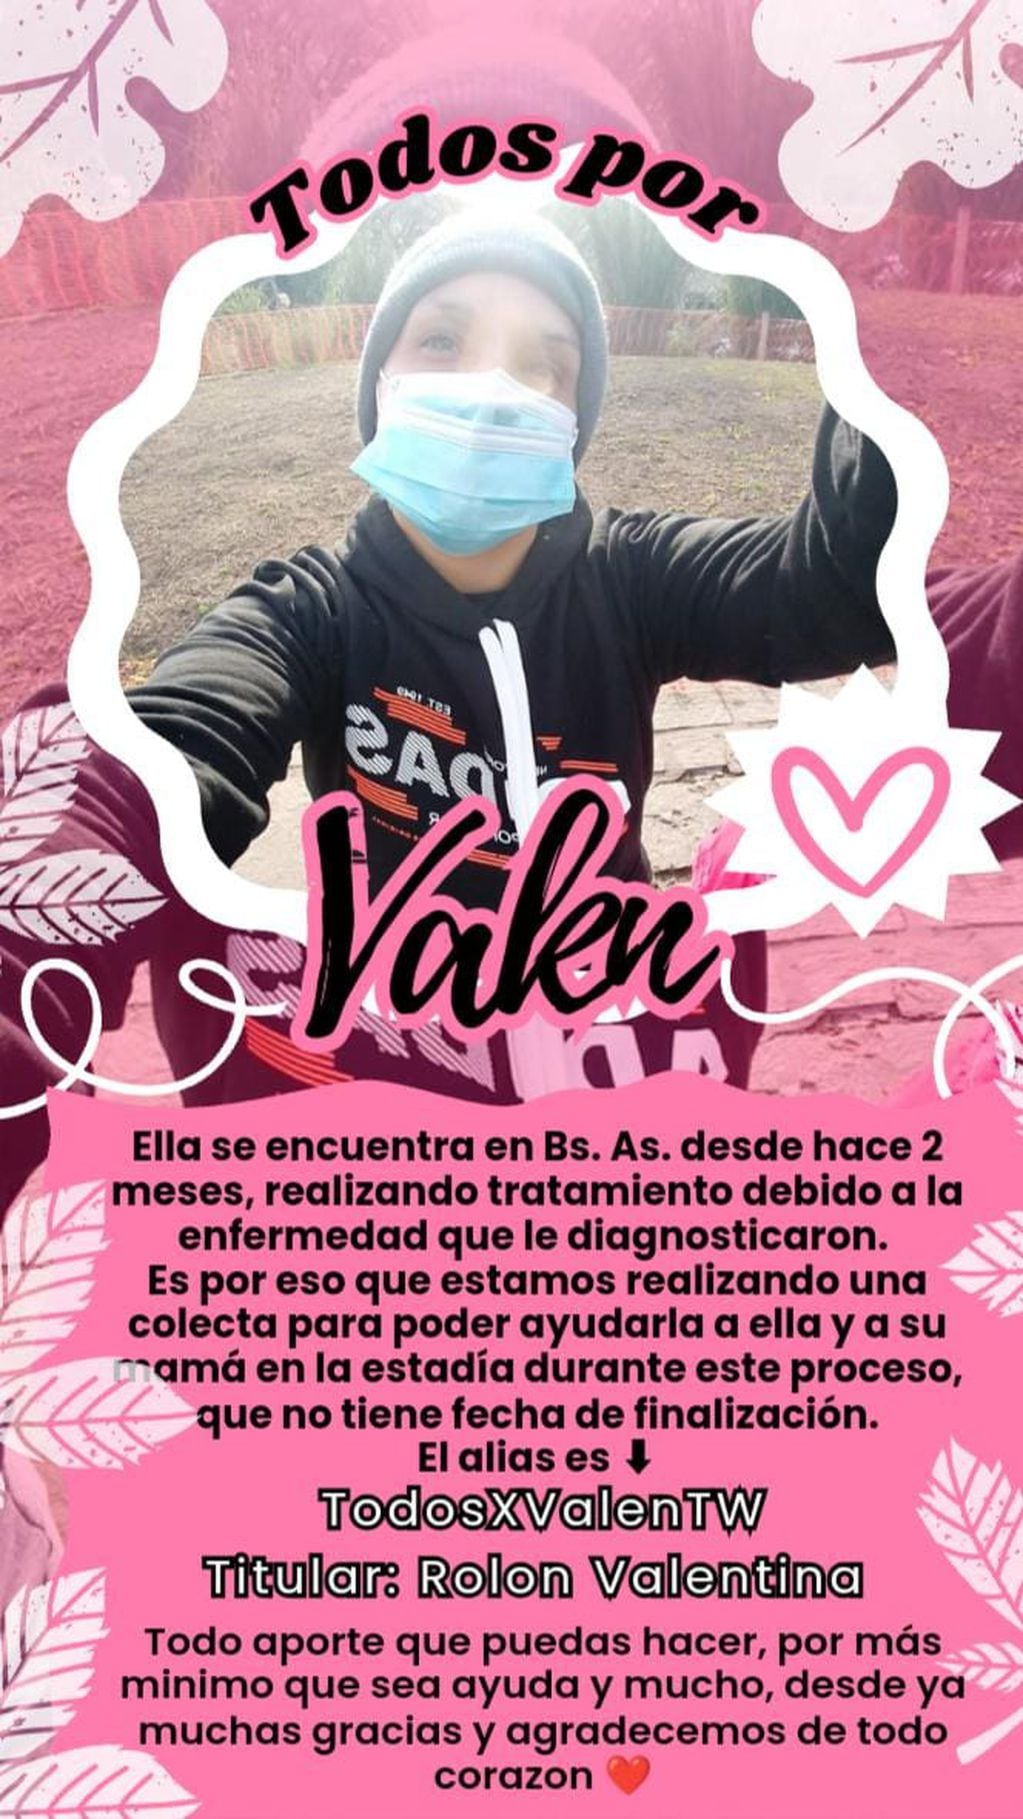 La campaña solidaria para Valentina, la chubutense que tiene leucemia y necesita continuar su tratamiento en Buenos Aires.